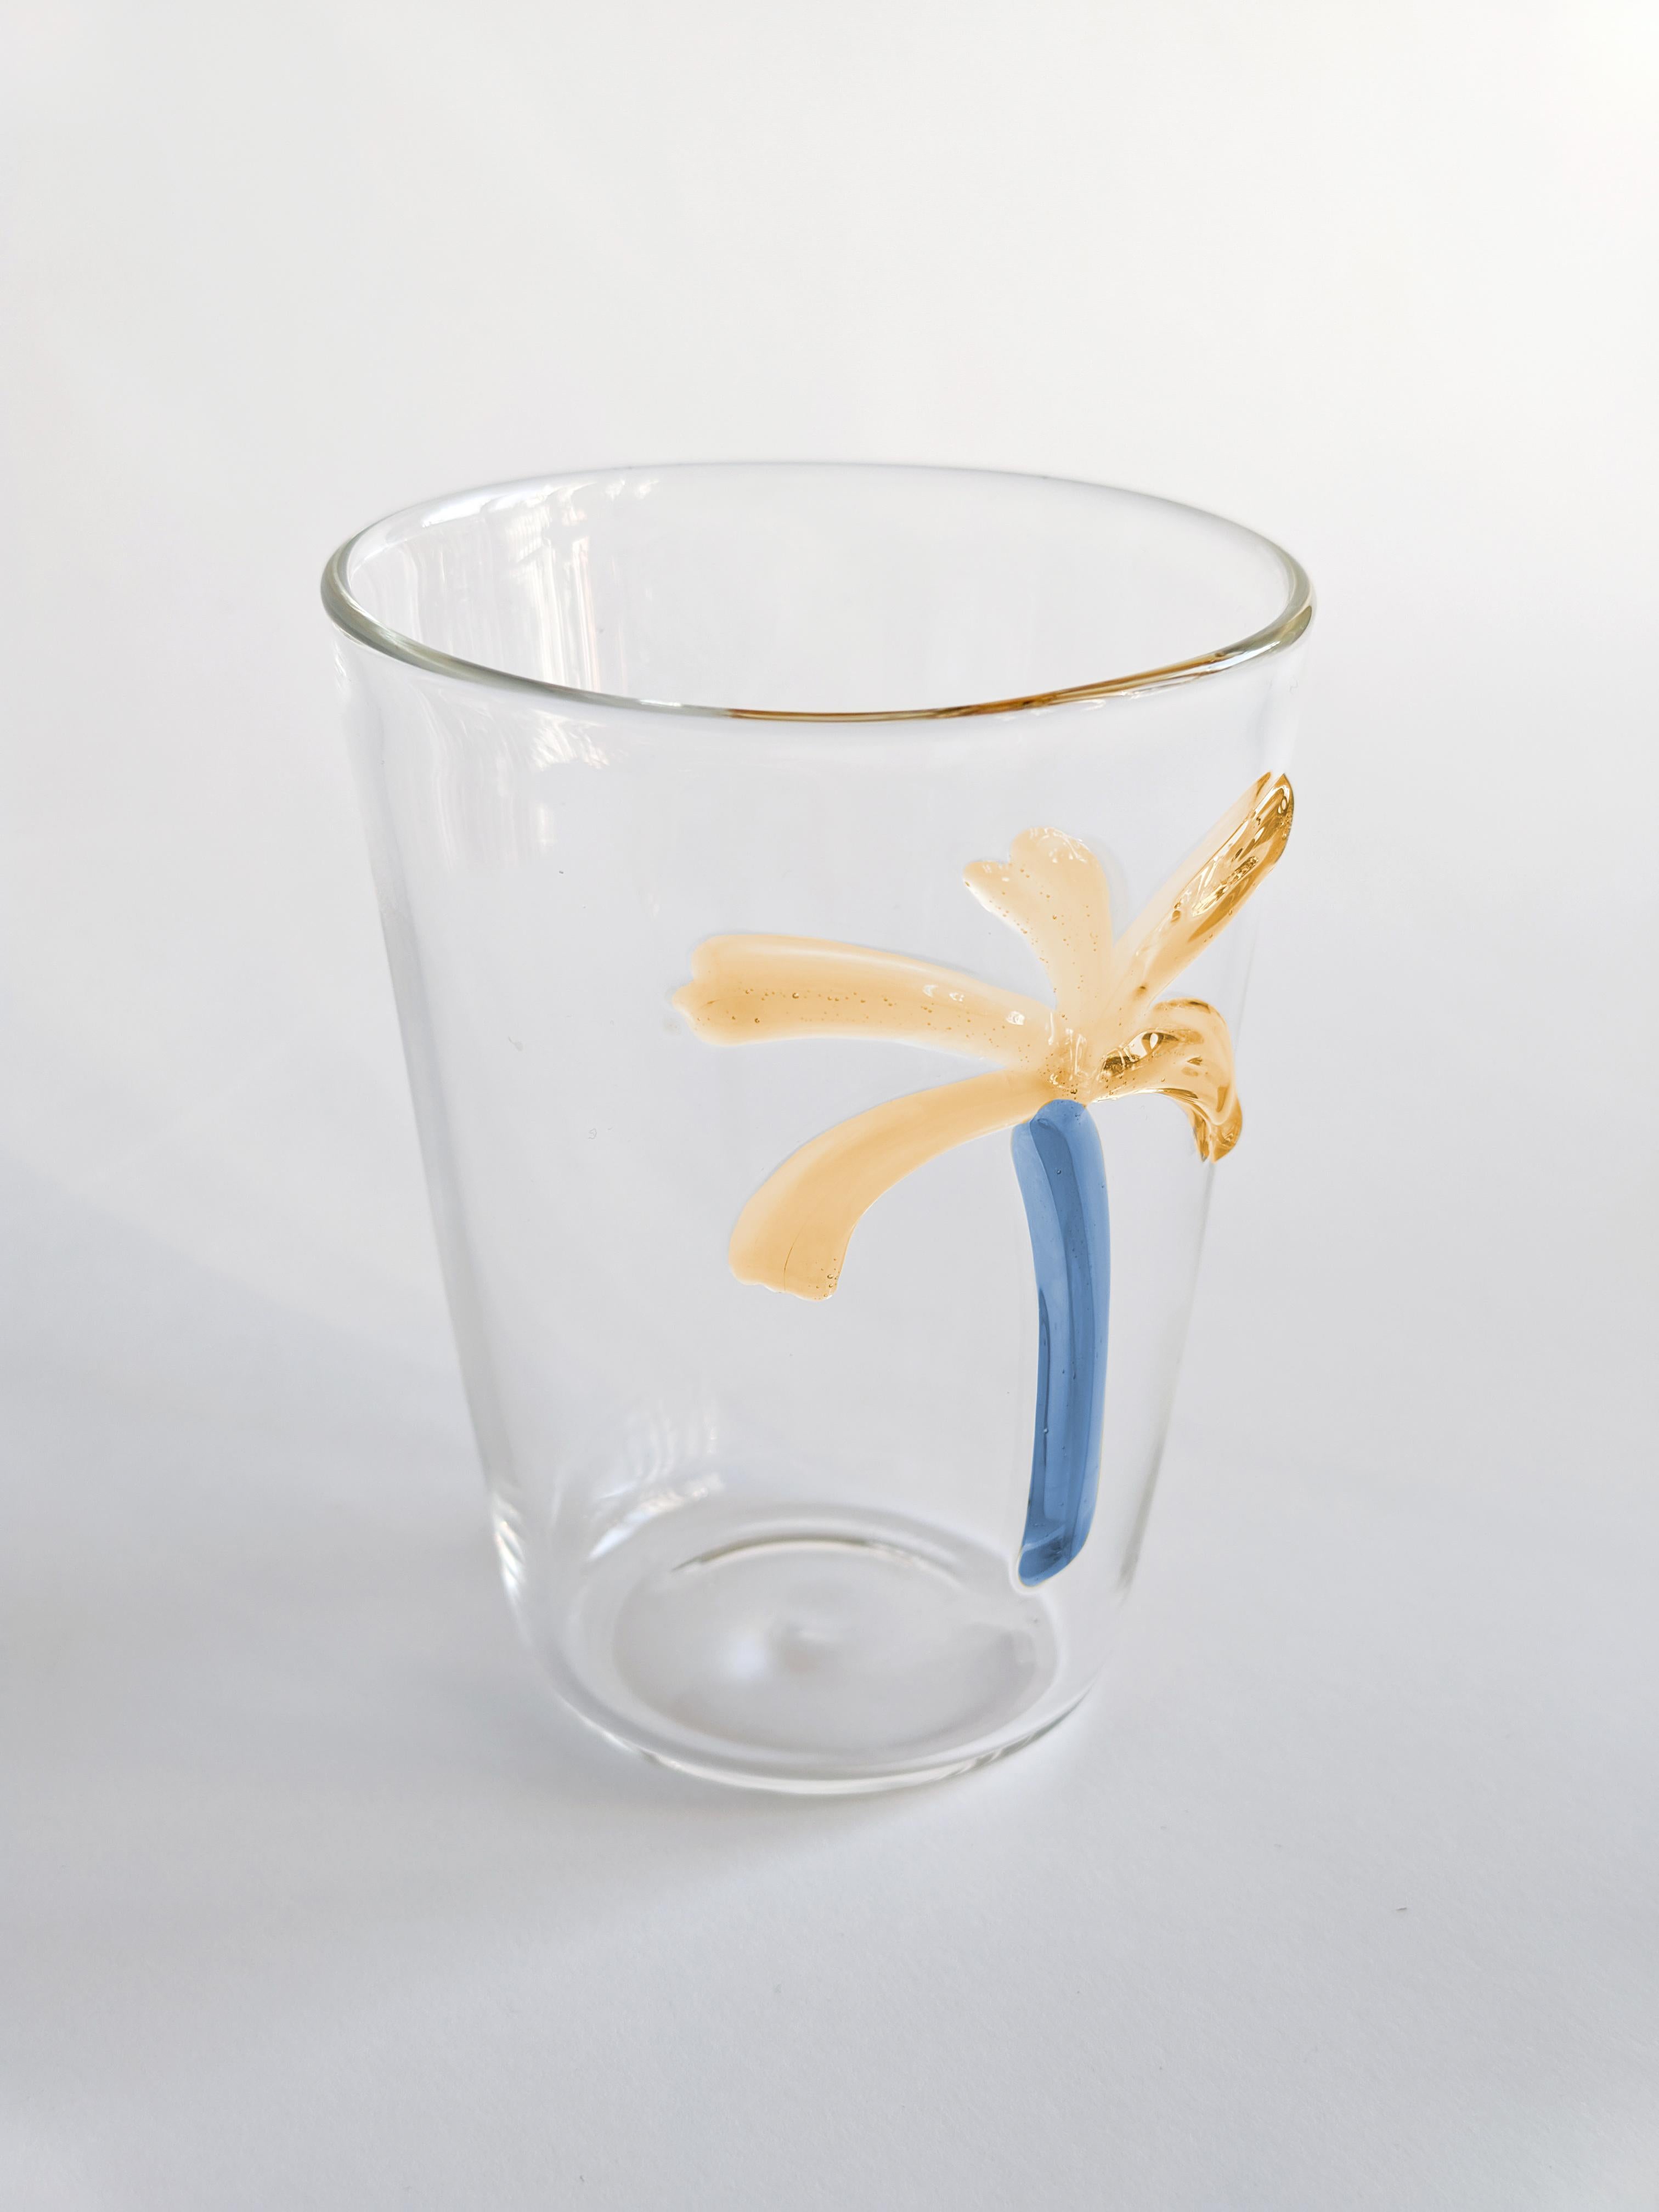 Les verres Las Palmas sont une collection de verres soufflés fabriqués en Italie et un pichet. Chaque pièce est unique et agrémentée d'une décoration inspirée des palmiers.
Ensemble de deux verres à eau.